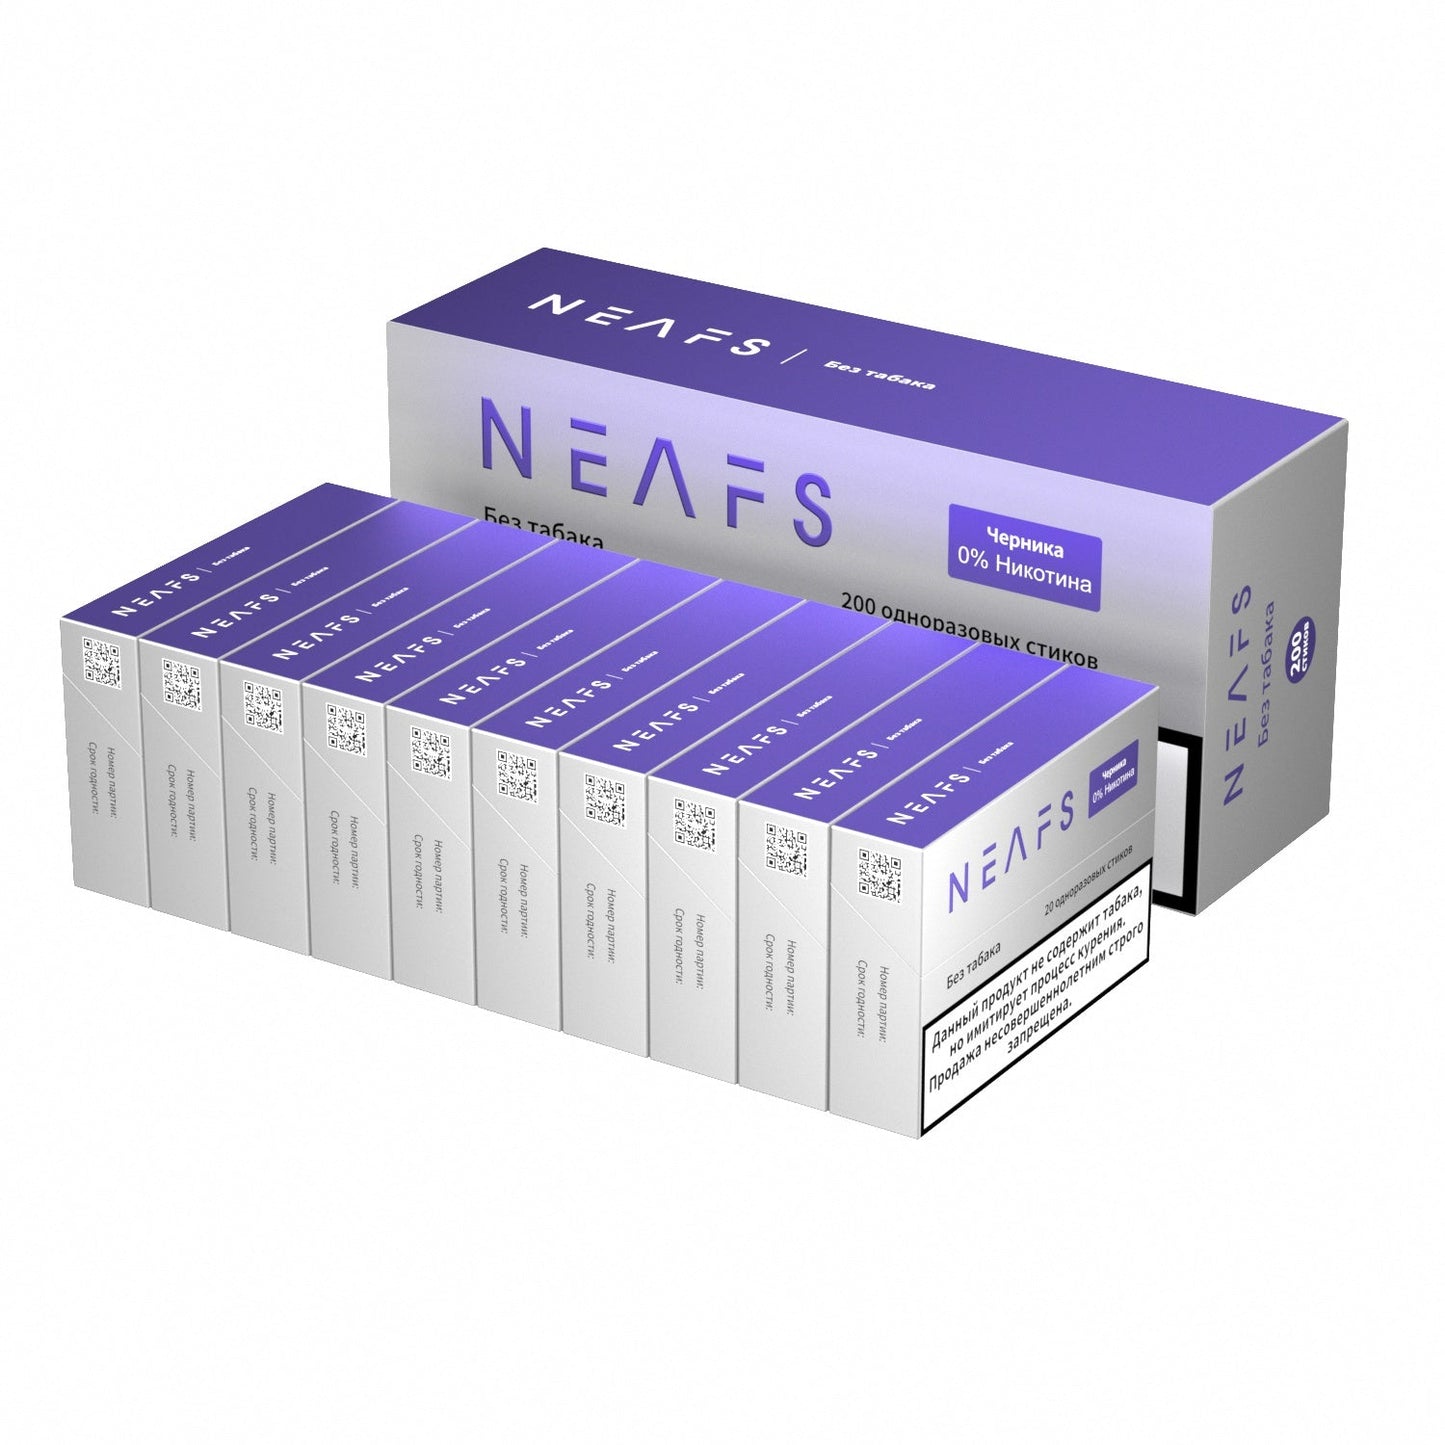 Безникотиновые стики NEAFS Черника 0% – 200 стиков